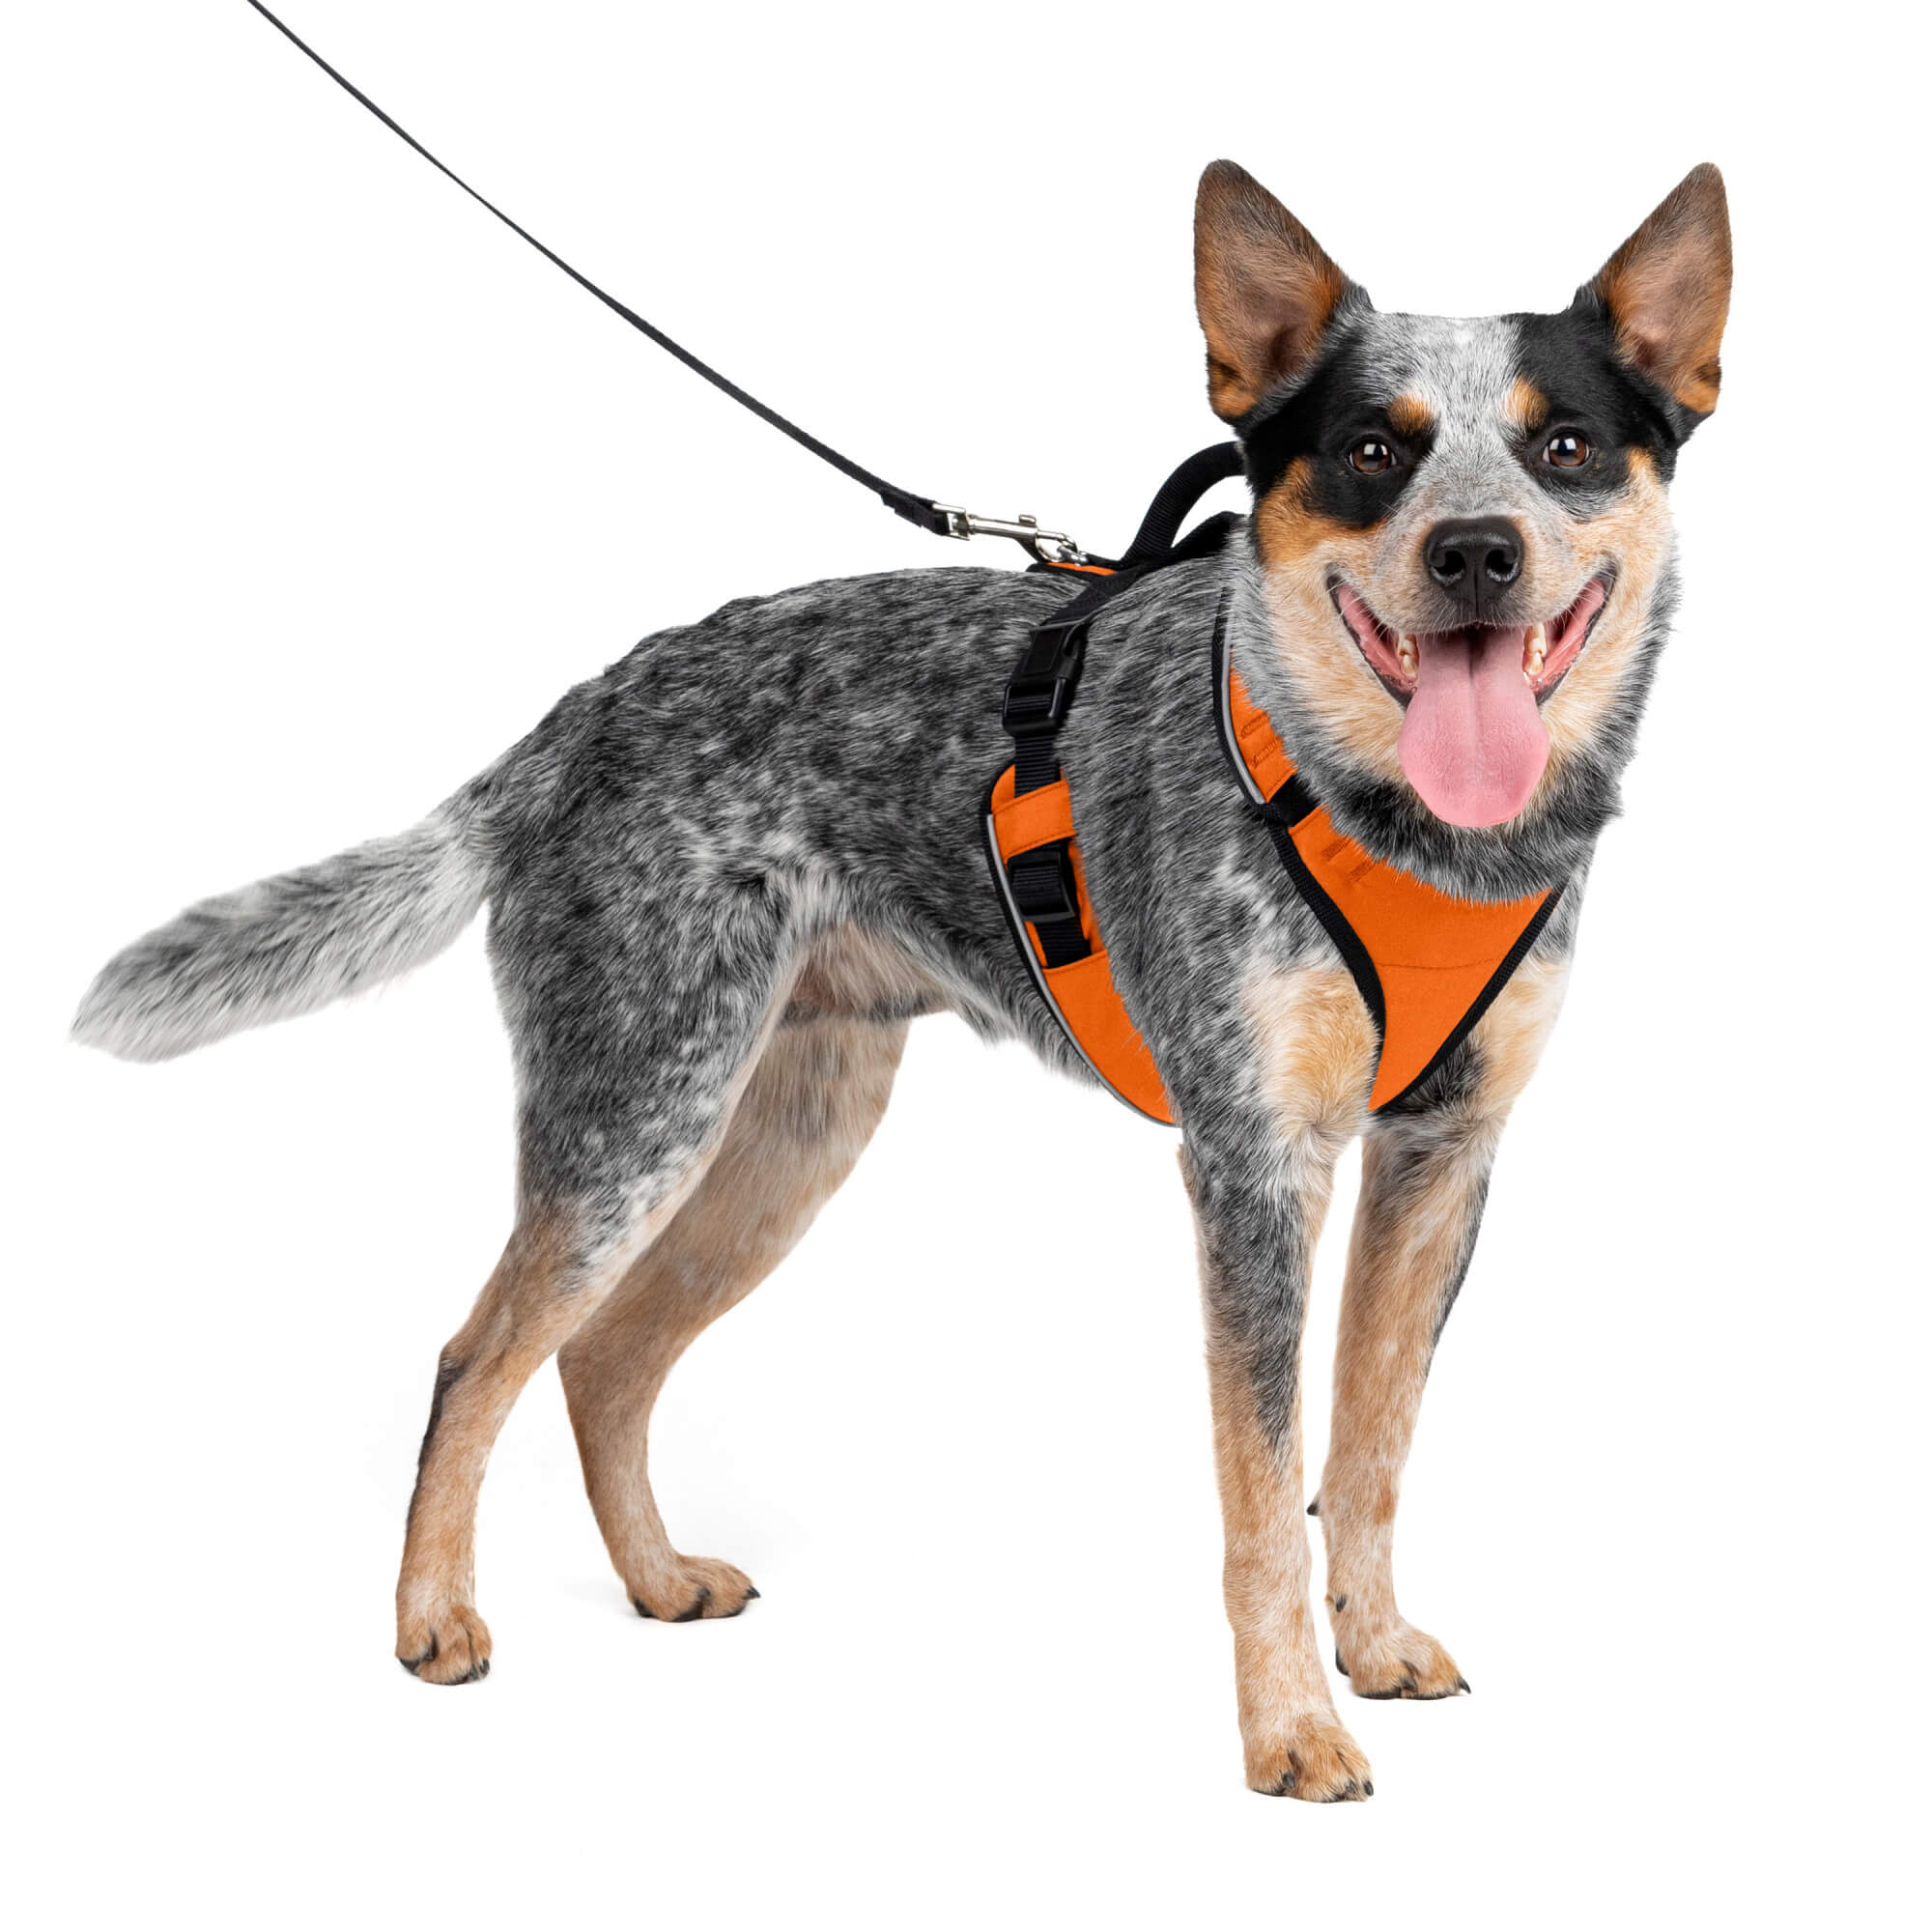 Dog wearing orange petsafe harness in medium